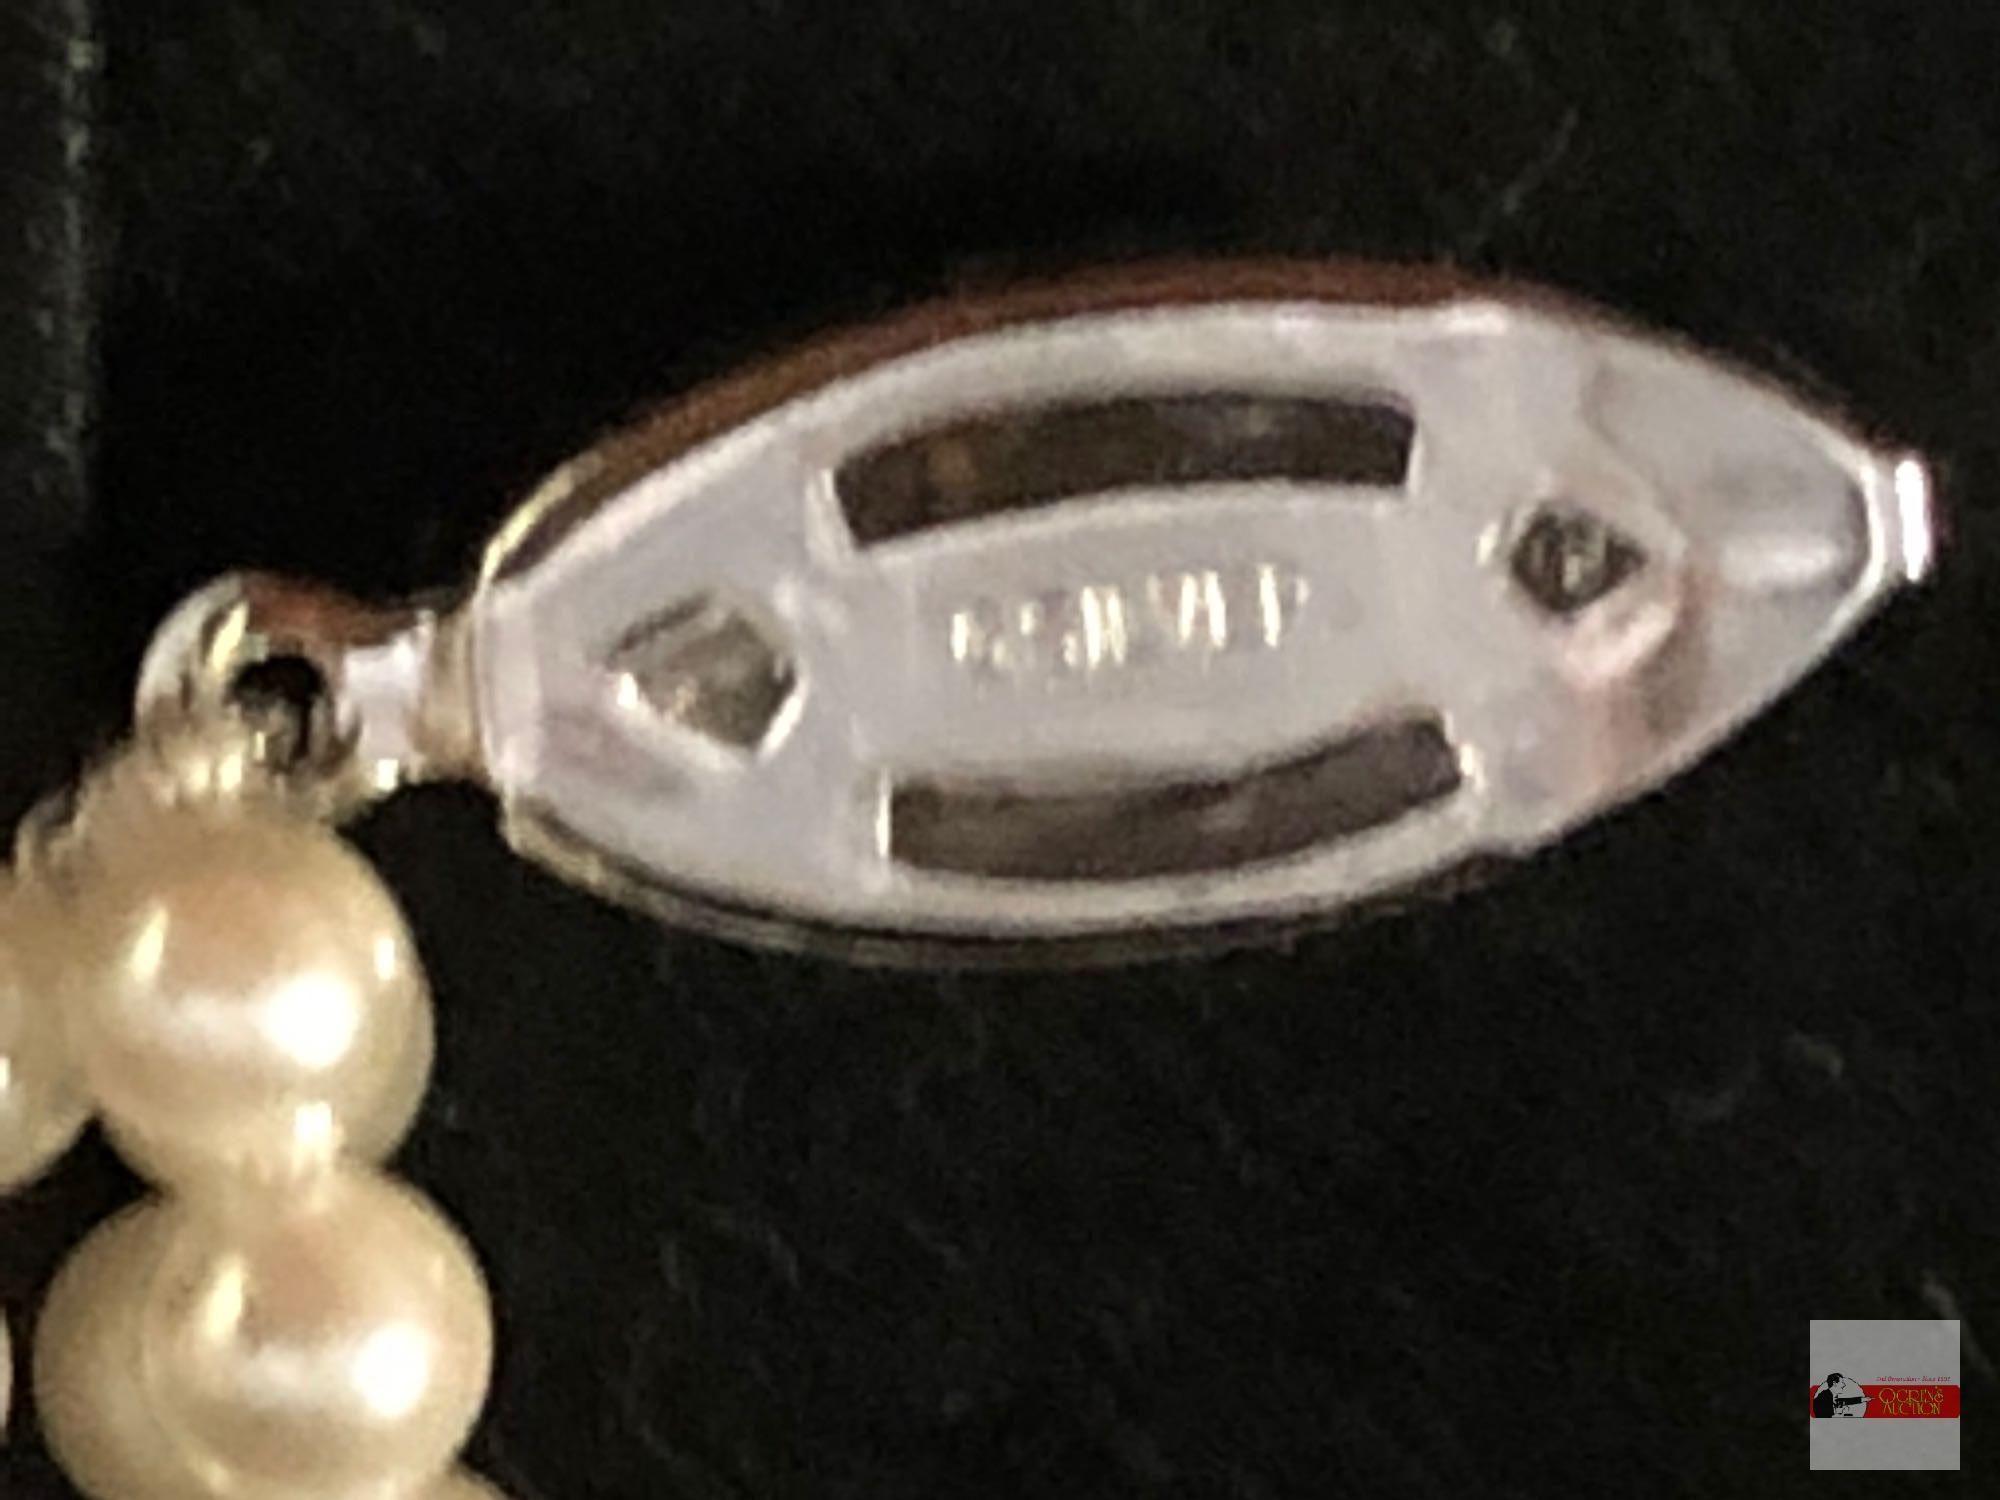 Jewelry - Bracelet - triple strand pearl bracelet w/ G silver lobster